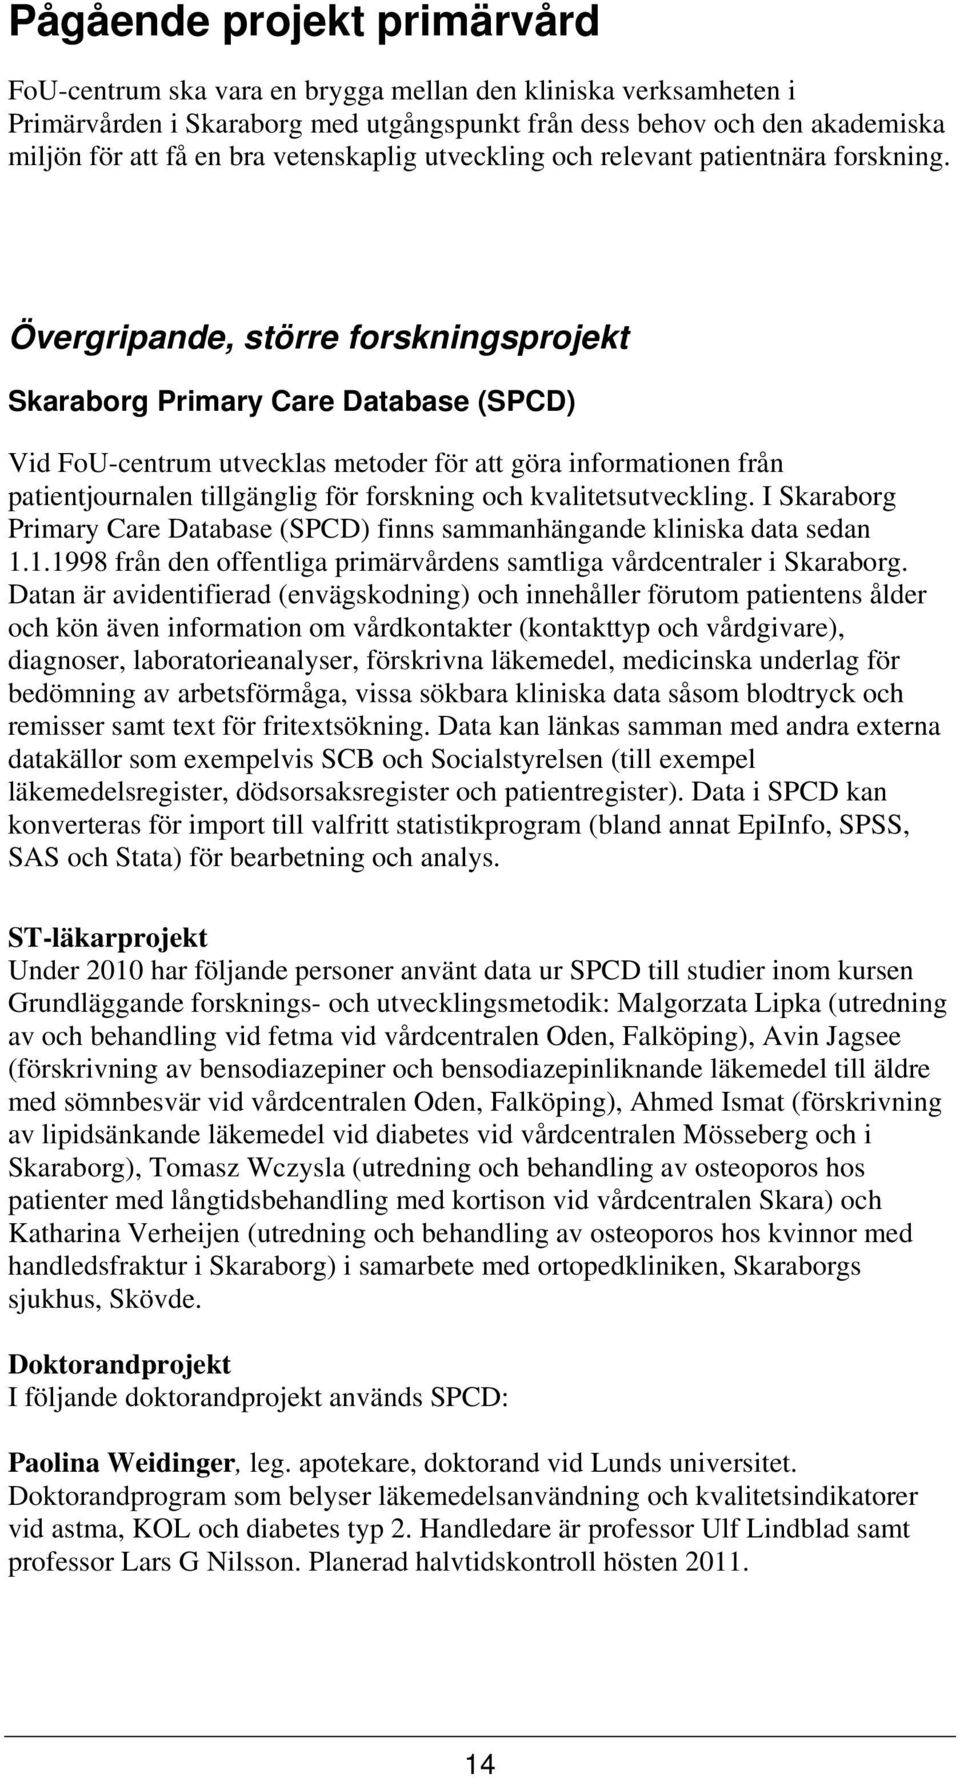 Övergripande, större forskningsprojekt Skaraborg Primary Care Database (SPCD) Vid FoU-centrum utvecklas metoder för att göra informationen från patientjournalen tillgänglig för forskning och